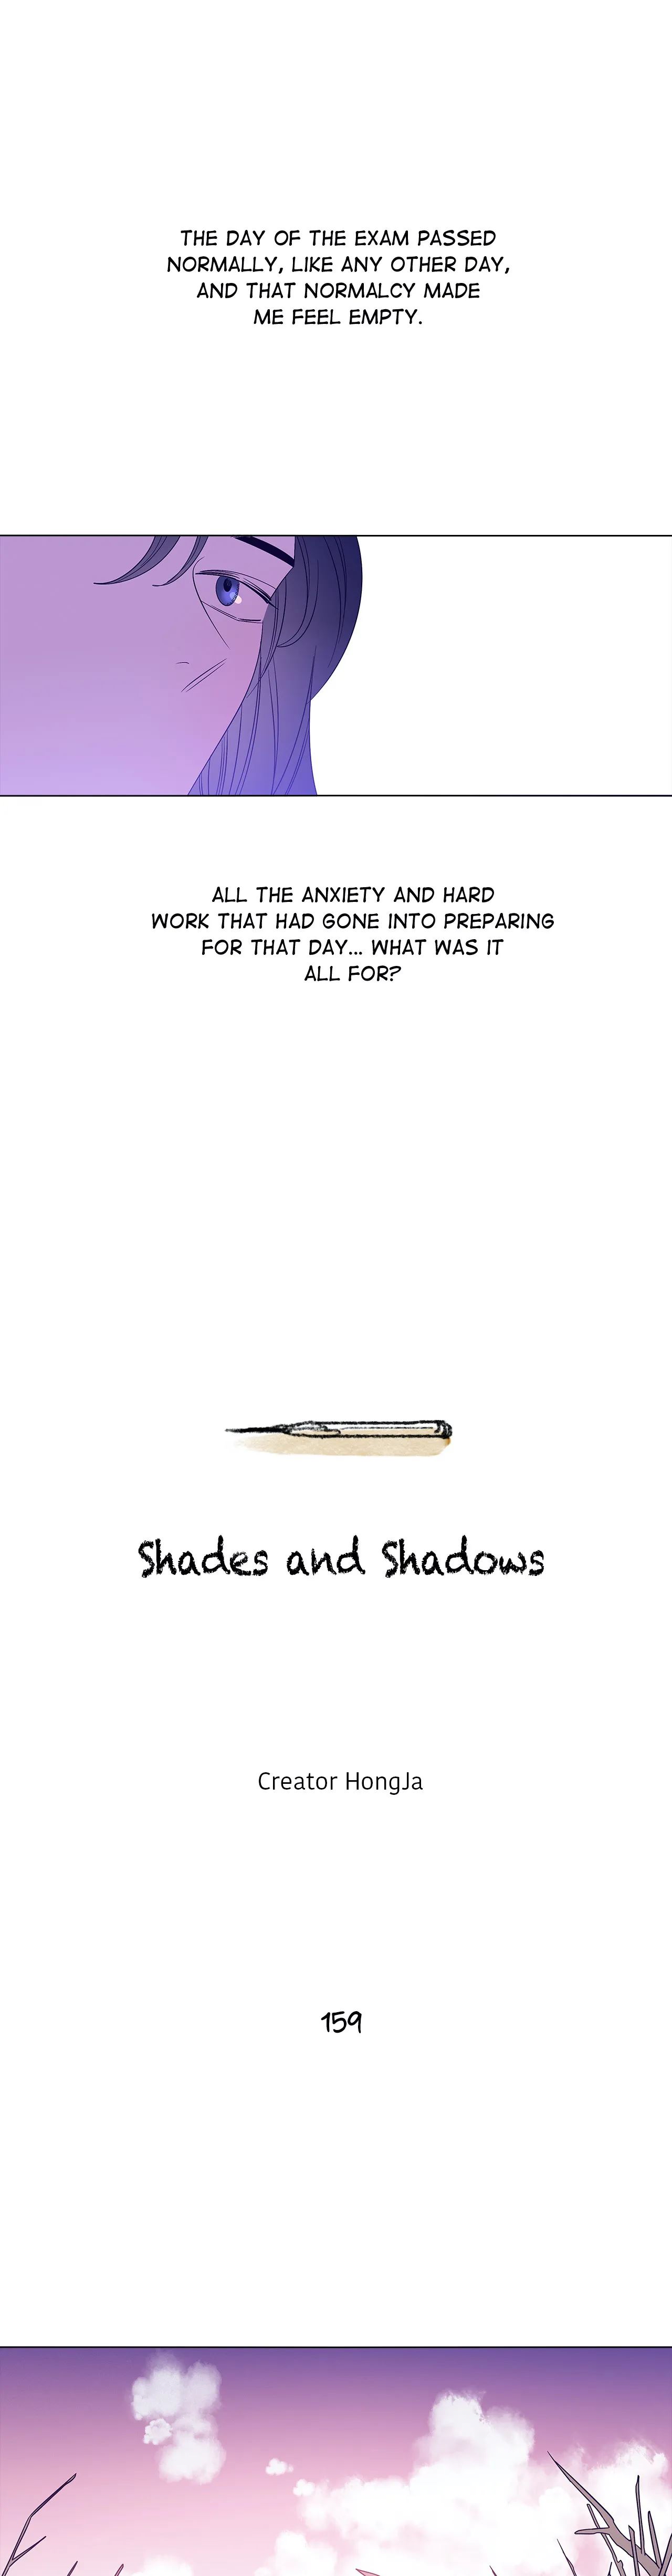 Shades and Shadows image